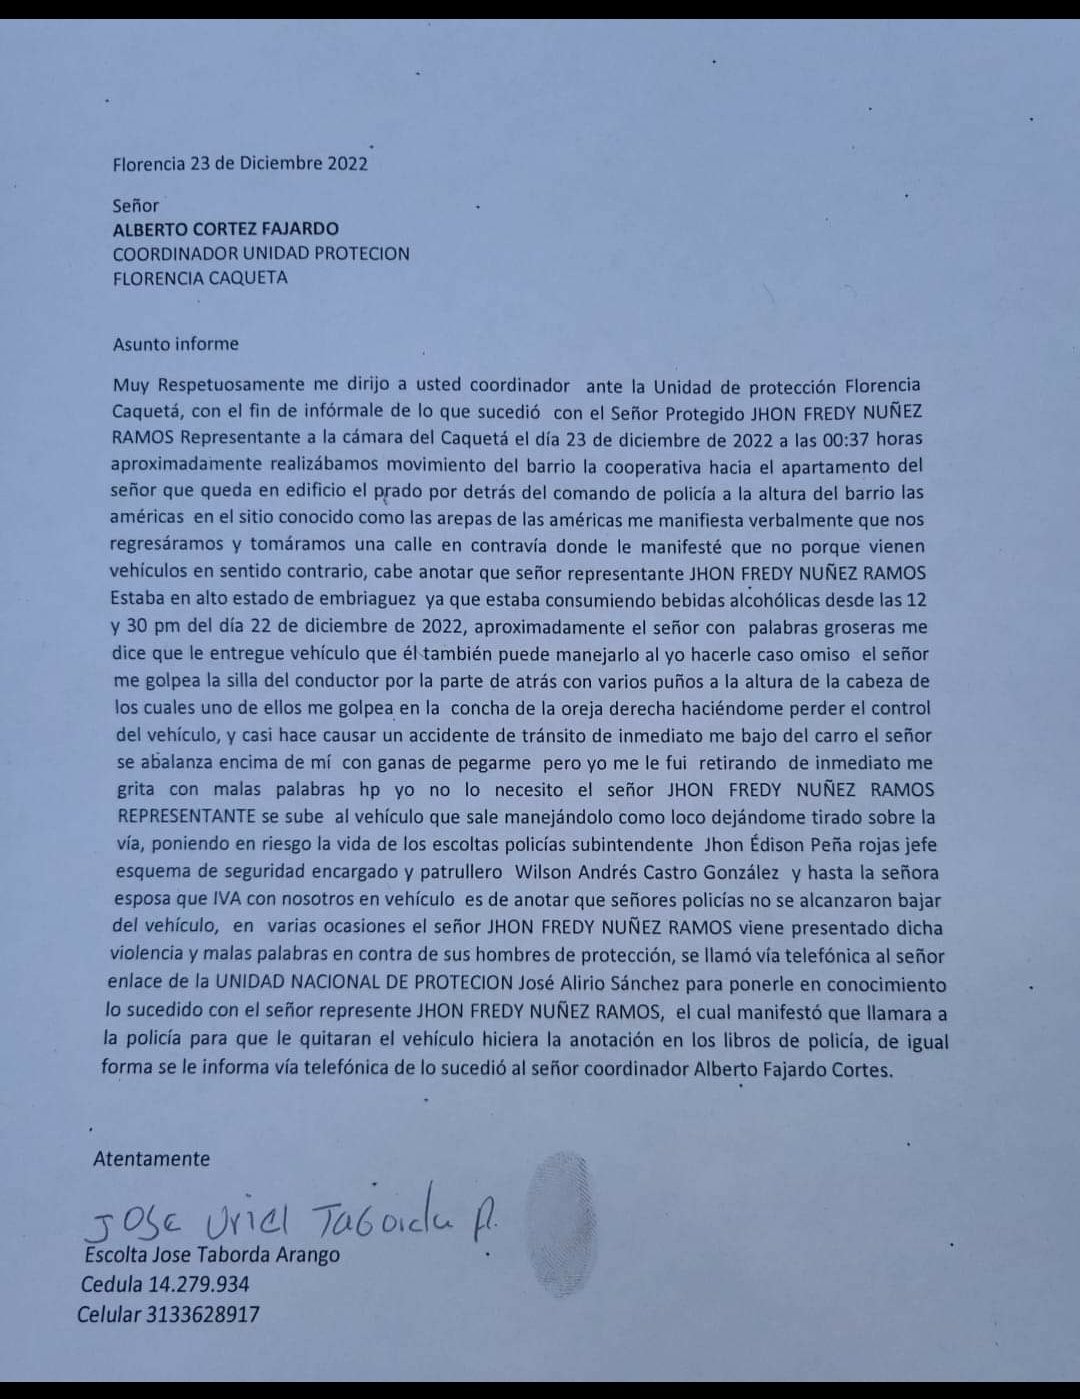 La denuncia del escolta José Taborda Arango.